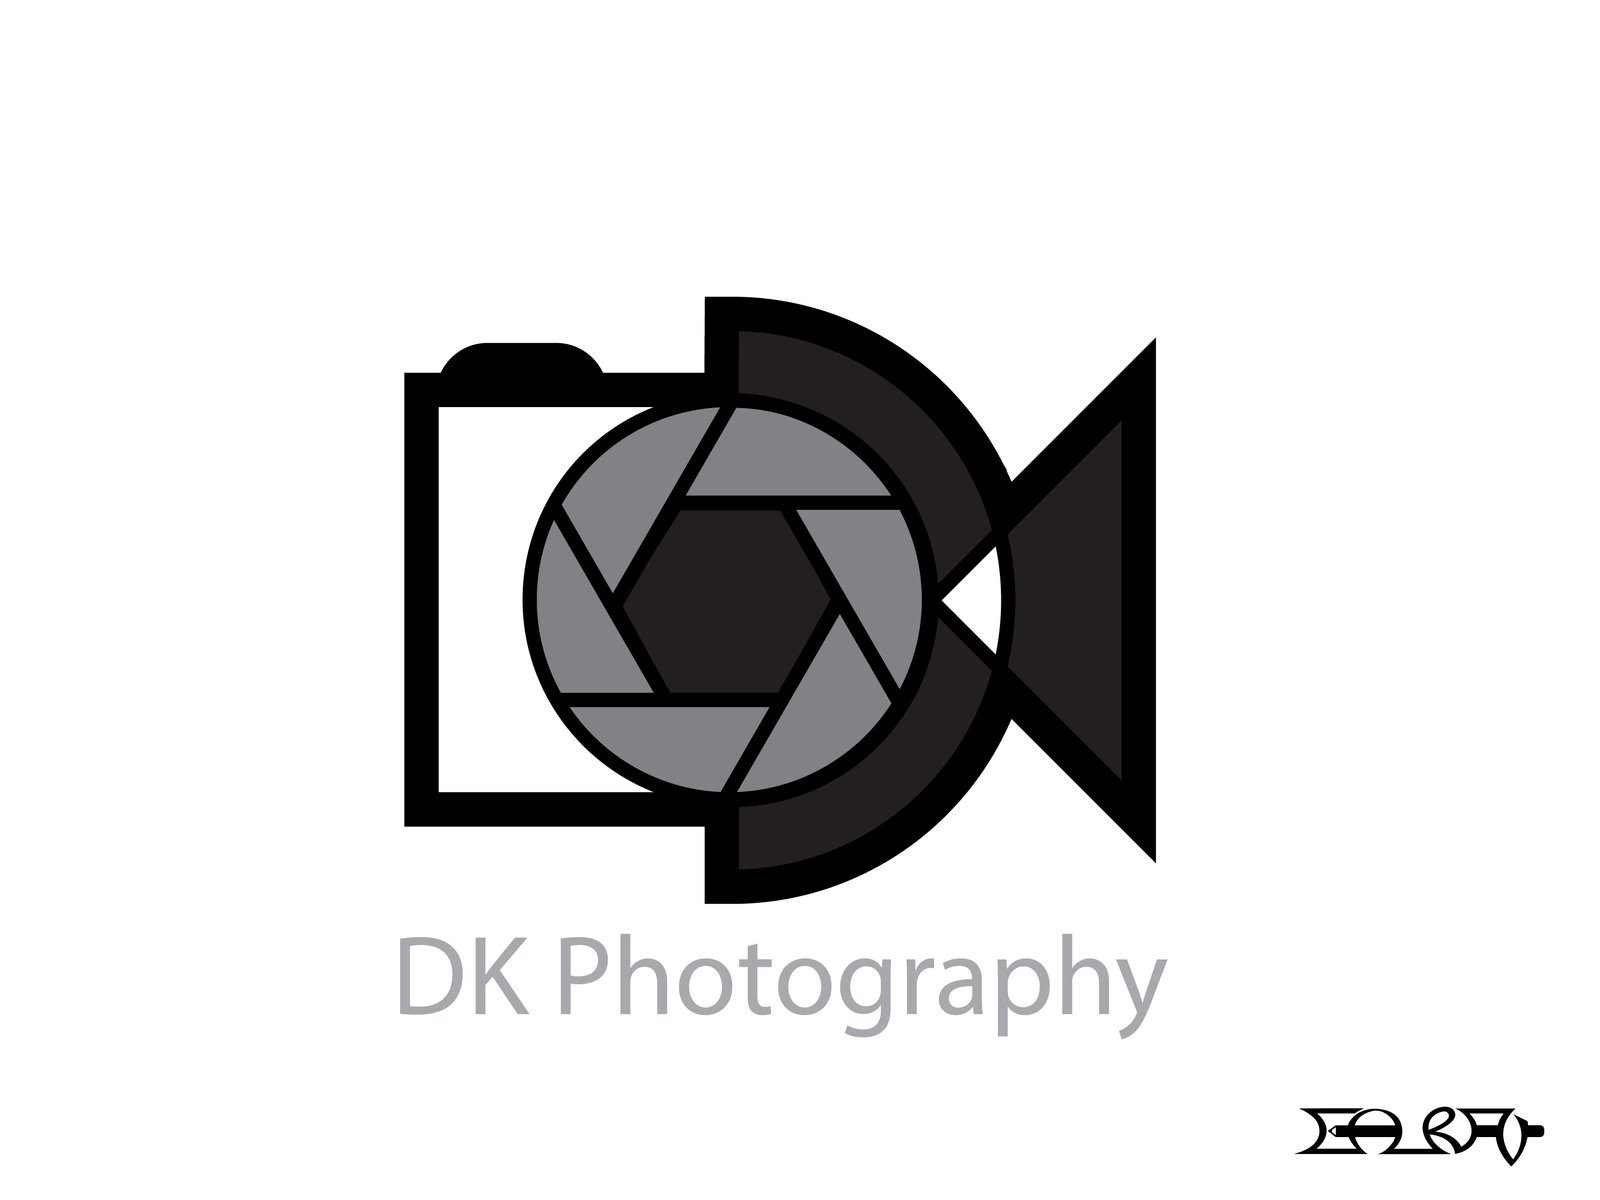 For WB/Gaurav Rangnekar Pictures logo Remakers by Ytp-Mkr on DeviantArt